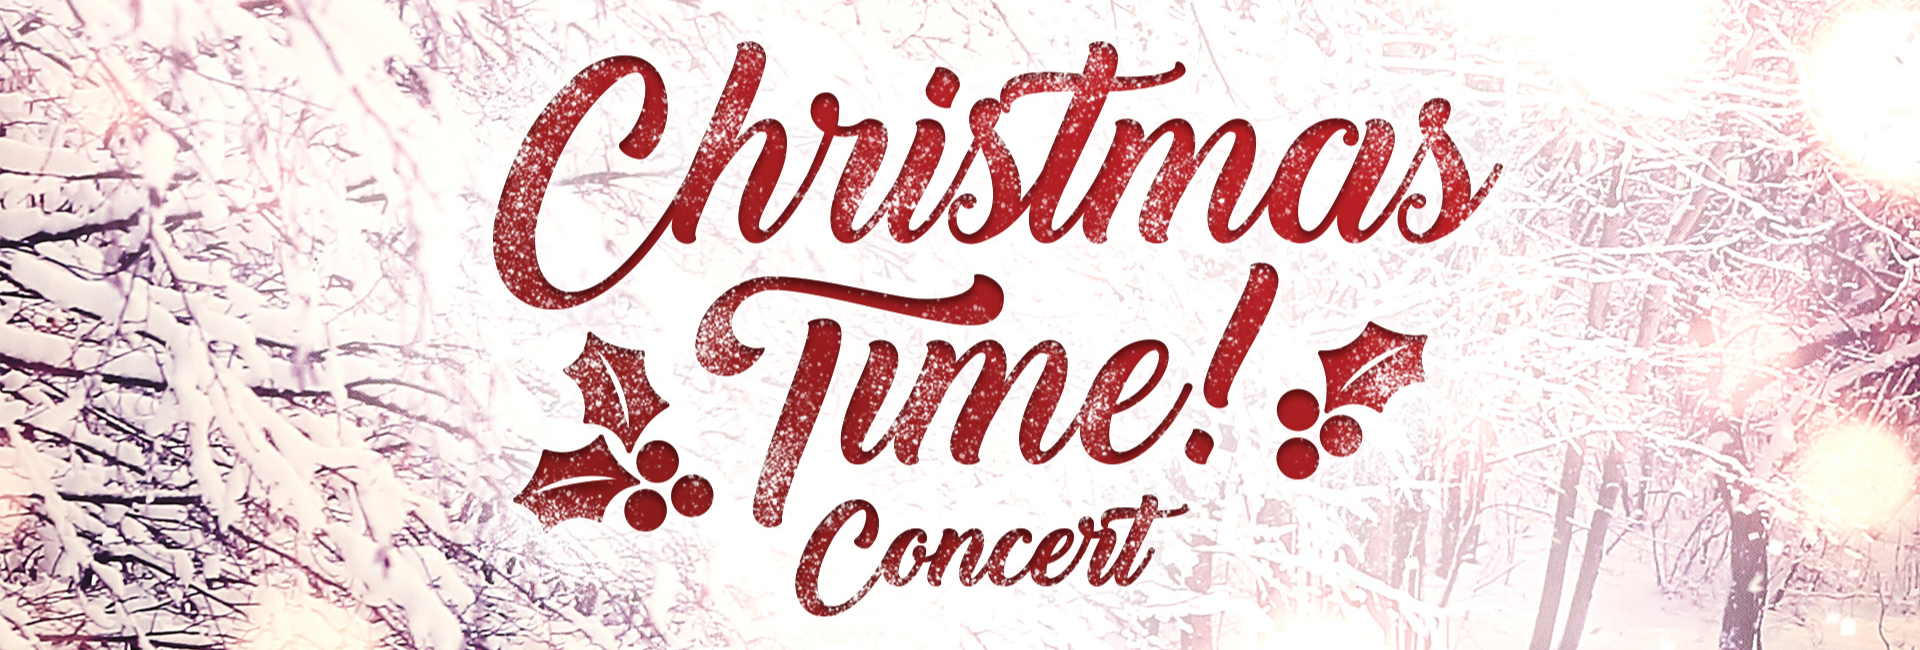 Christmas Time! Concert